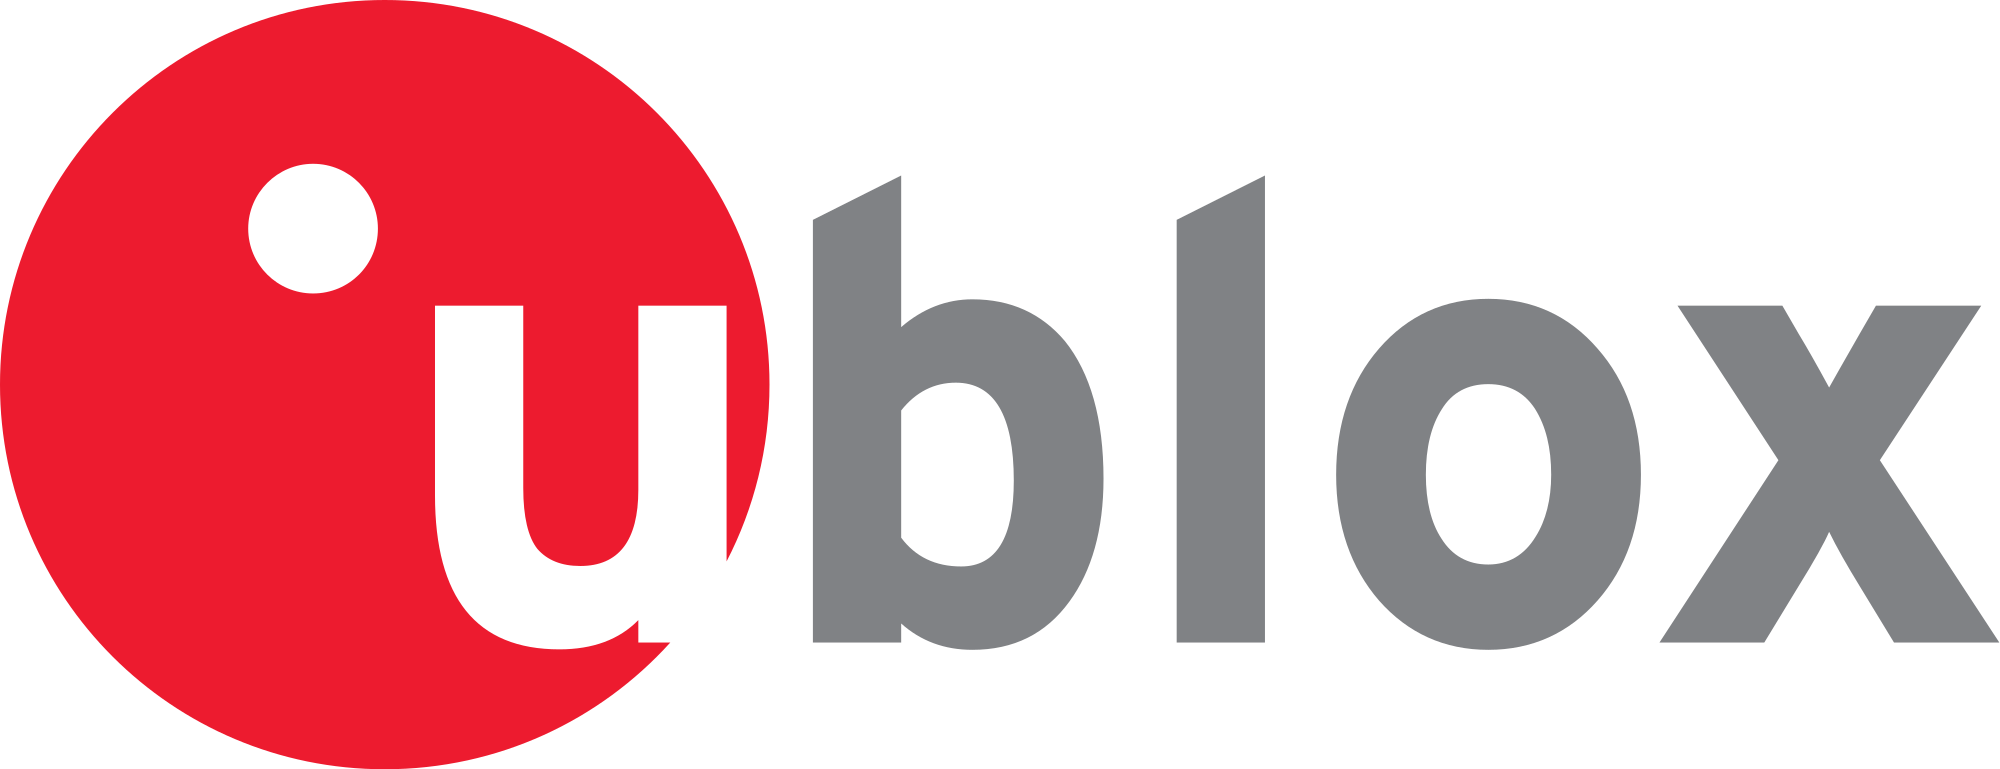 U-Blox Brand Logo